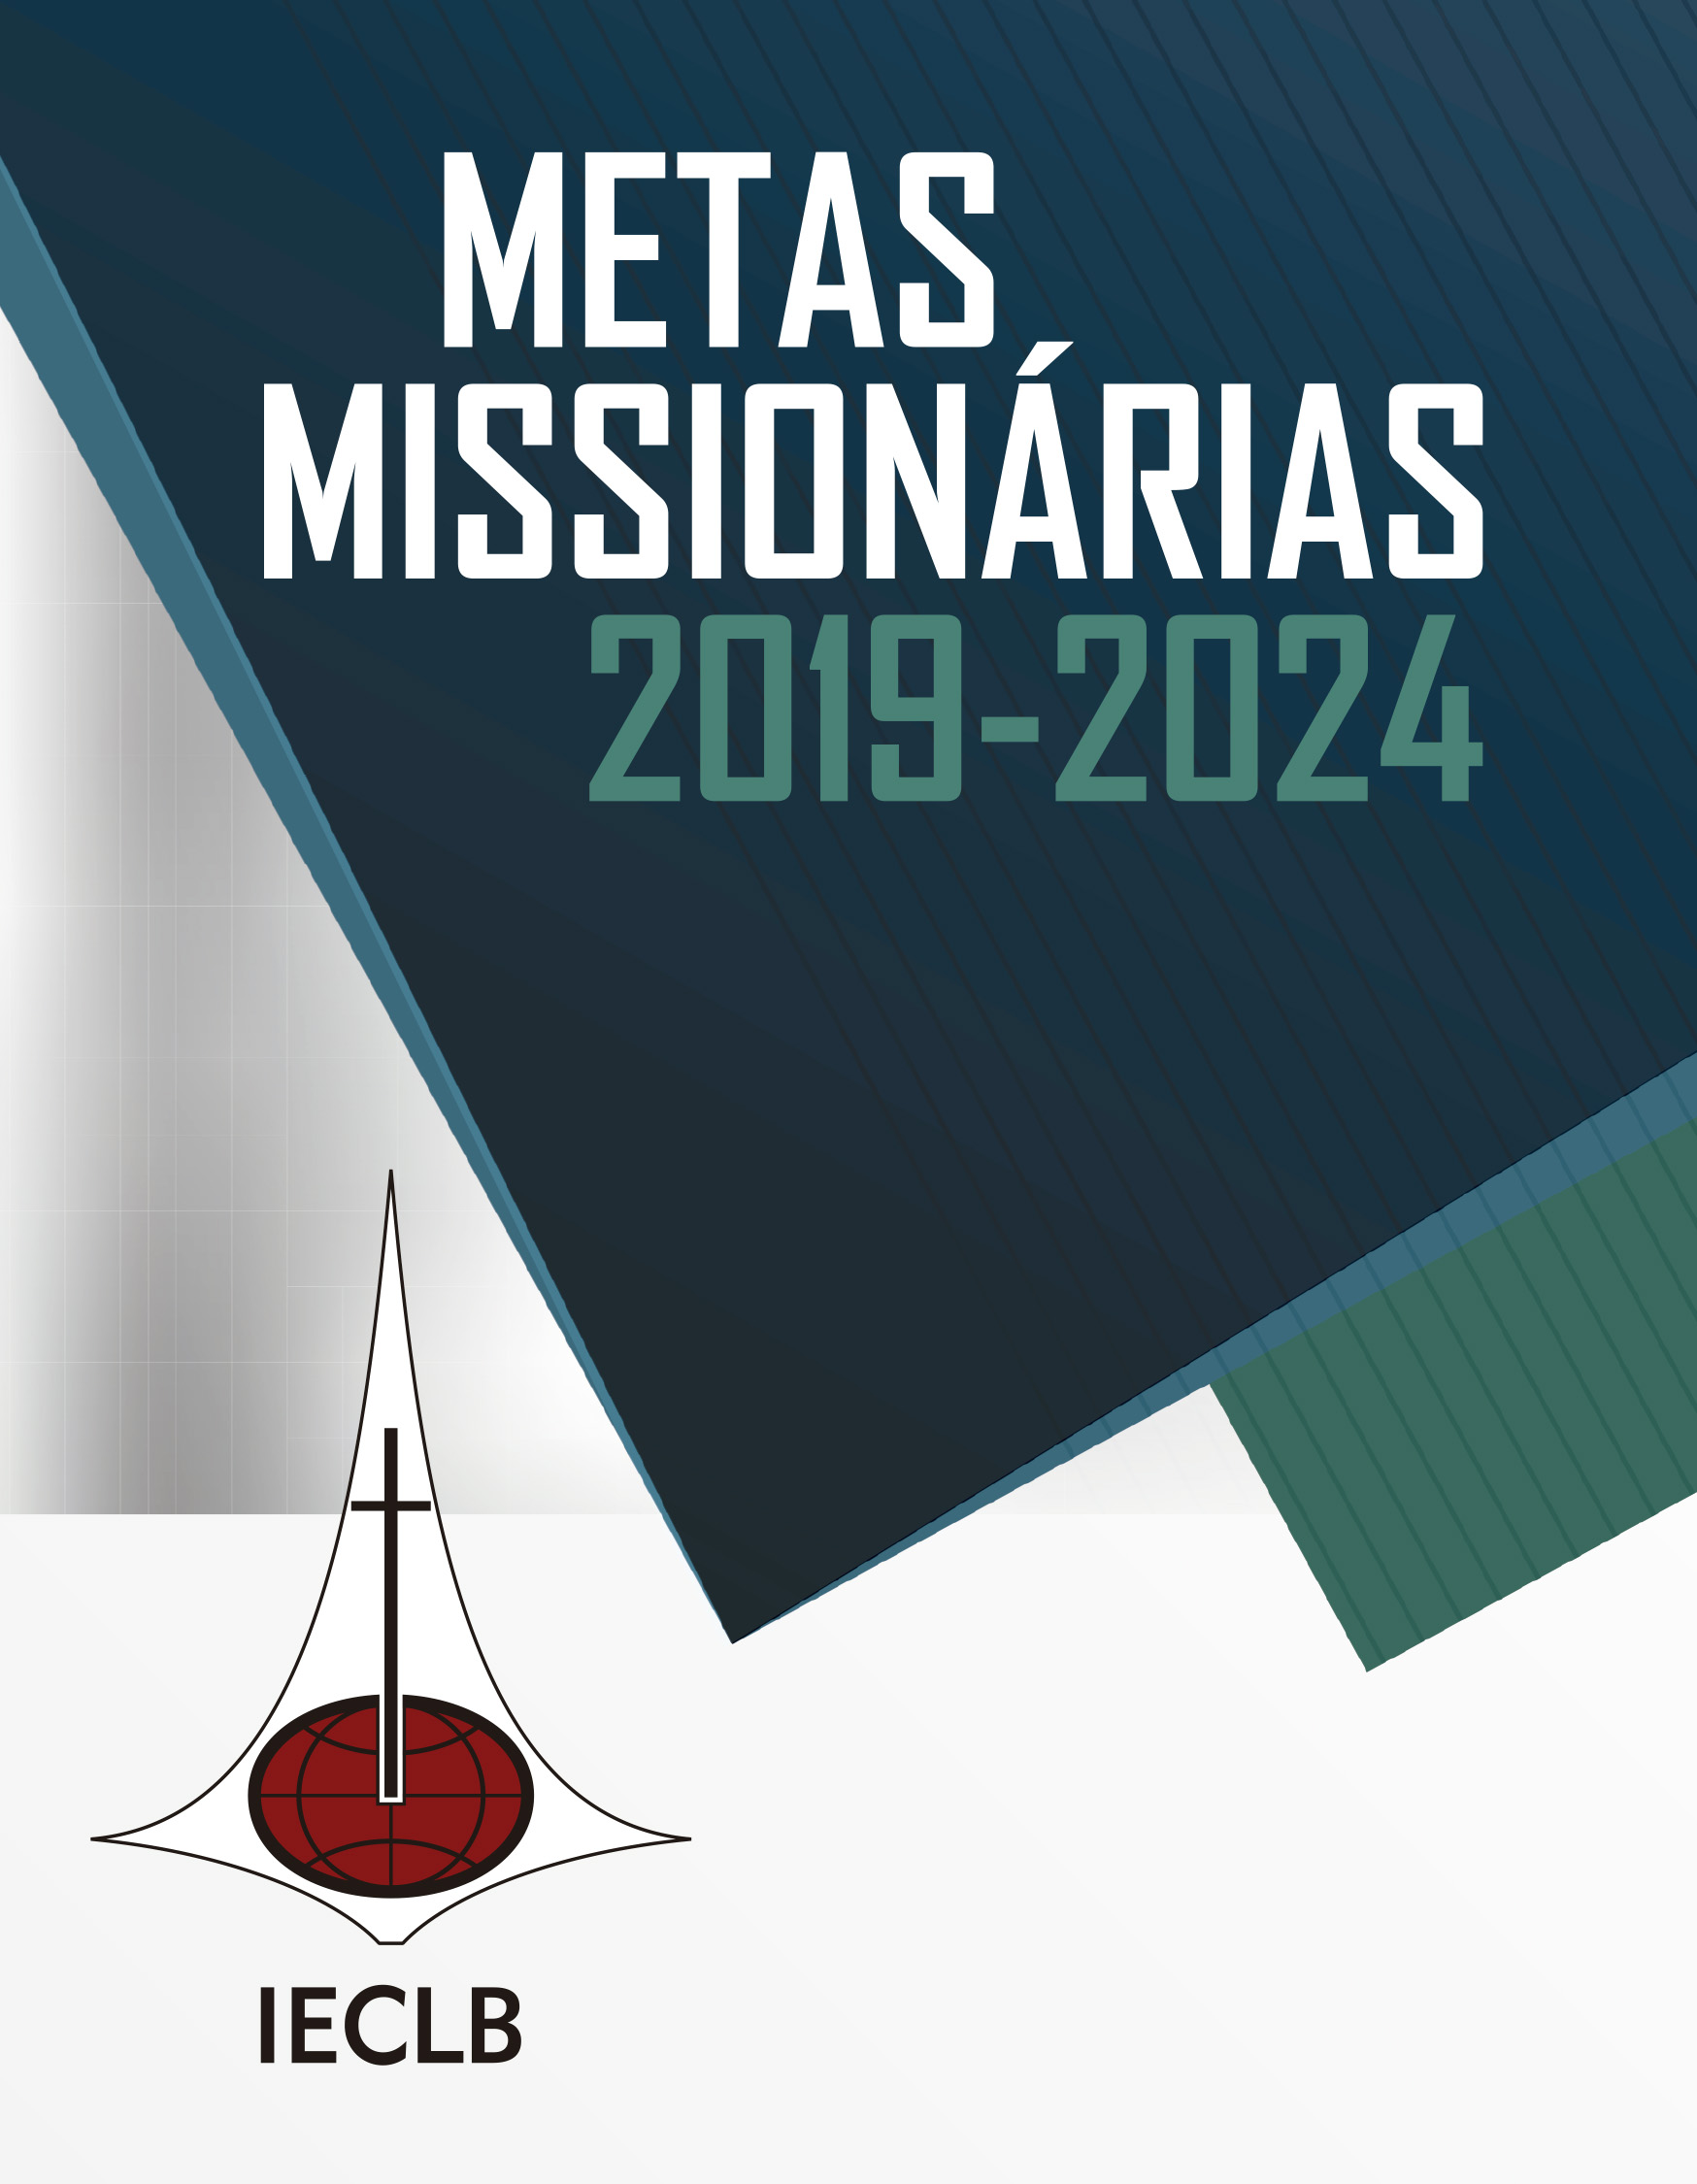 texto: "Metas missionárias 2019-2024", mais logo da IECLB abaixo